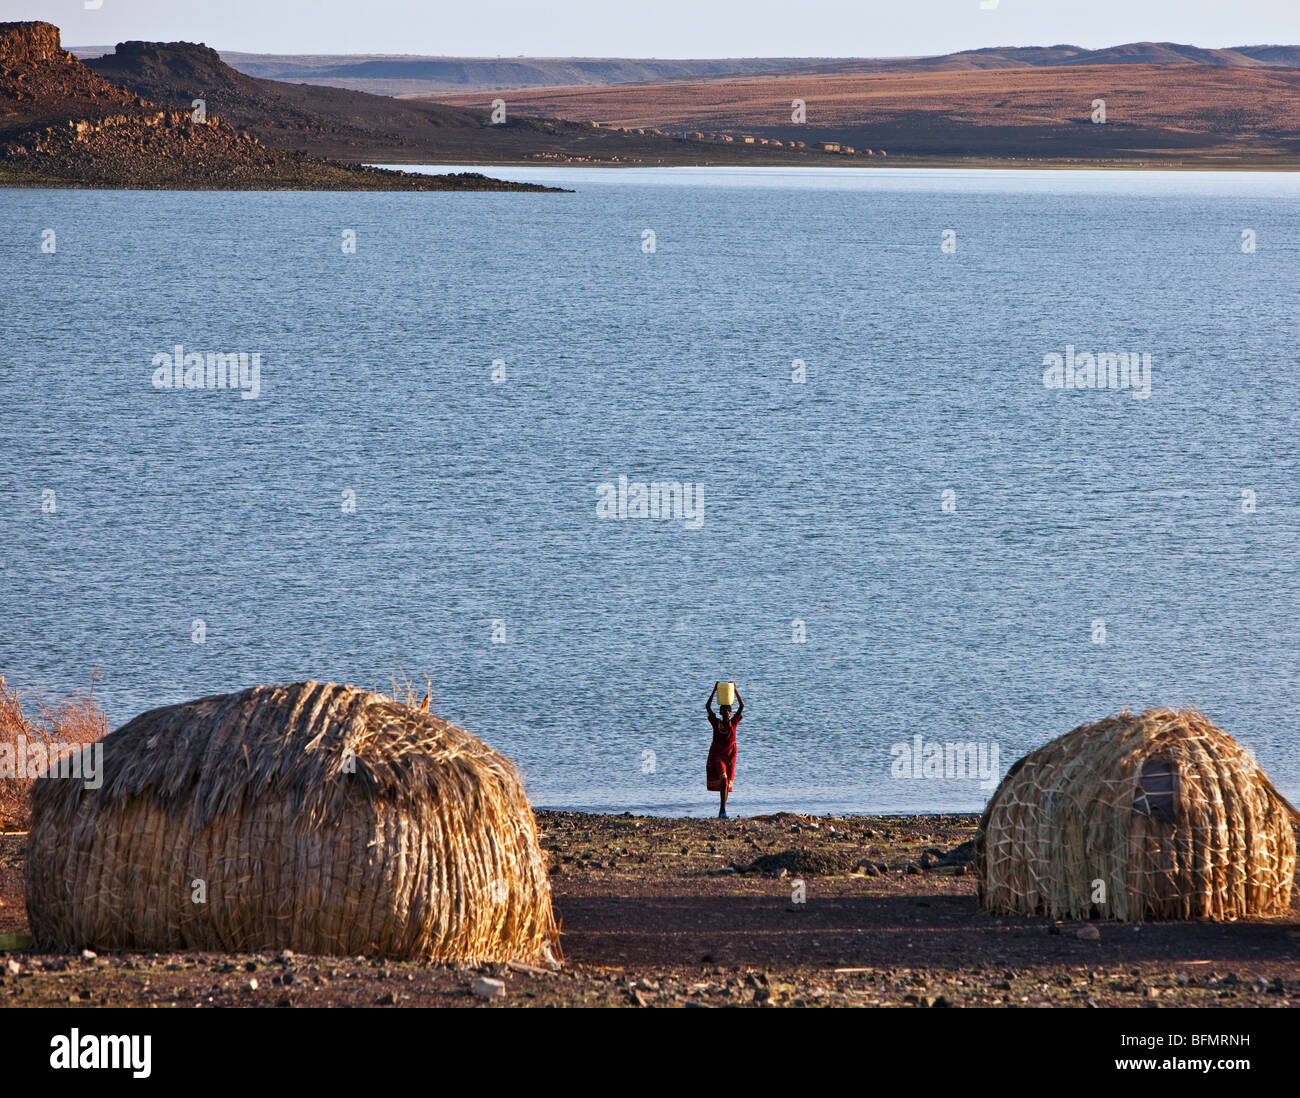 Eine El Molo Frau holt Wasser vom Turkana-See. Typische kuppelförmige El Molo Häuser im Vordergrund sind aus Schilf hergestellt. Stockfoto